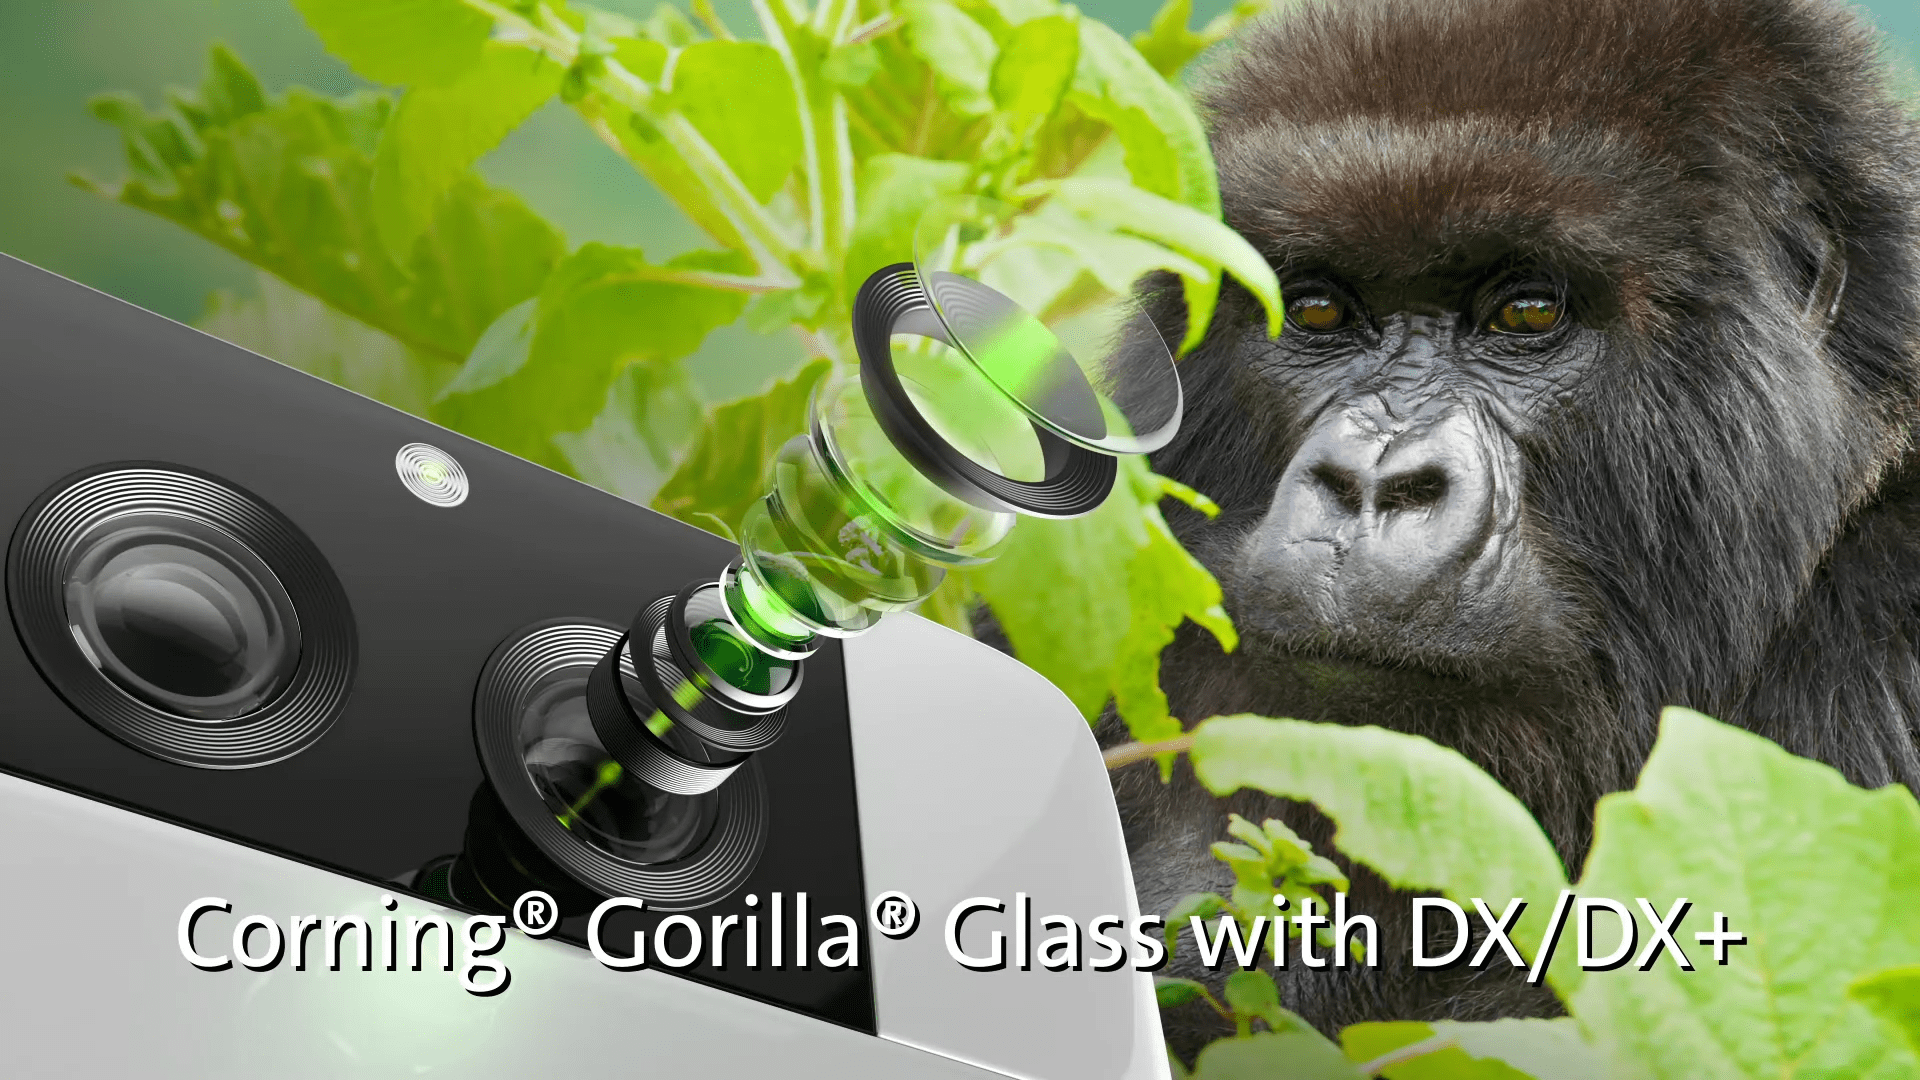 Das neueste Corning Gorilla Glass geht zuerst an Samsung 177